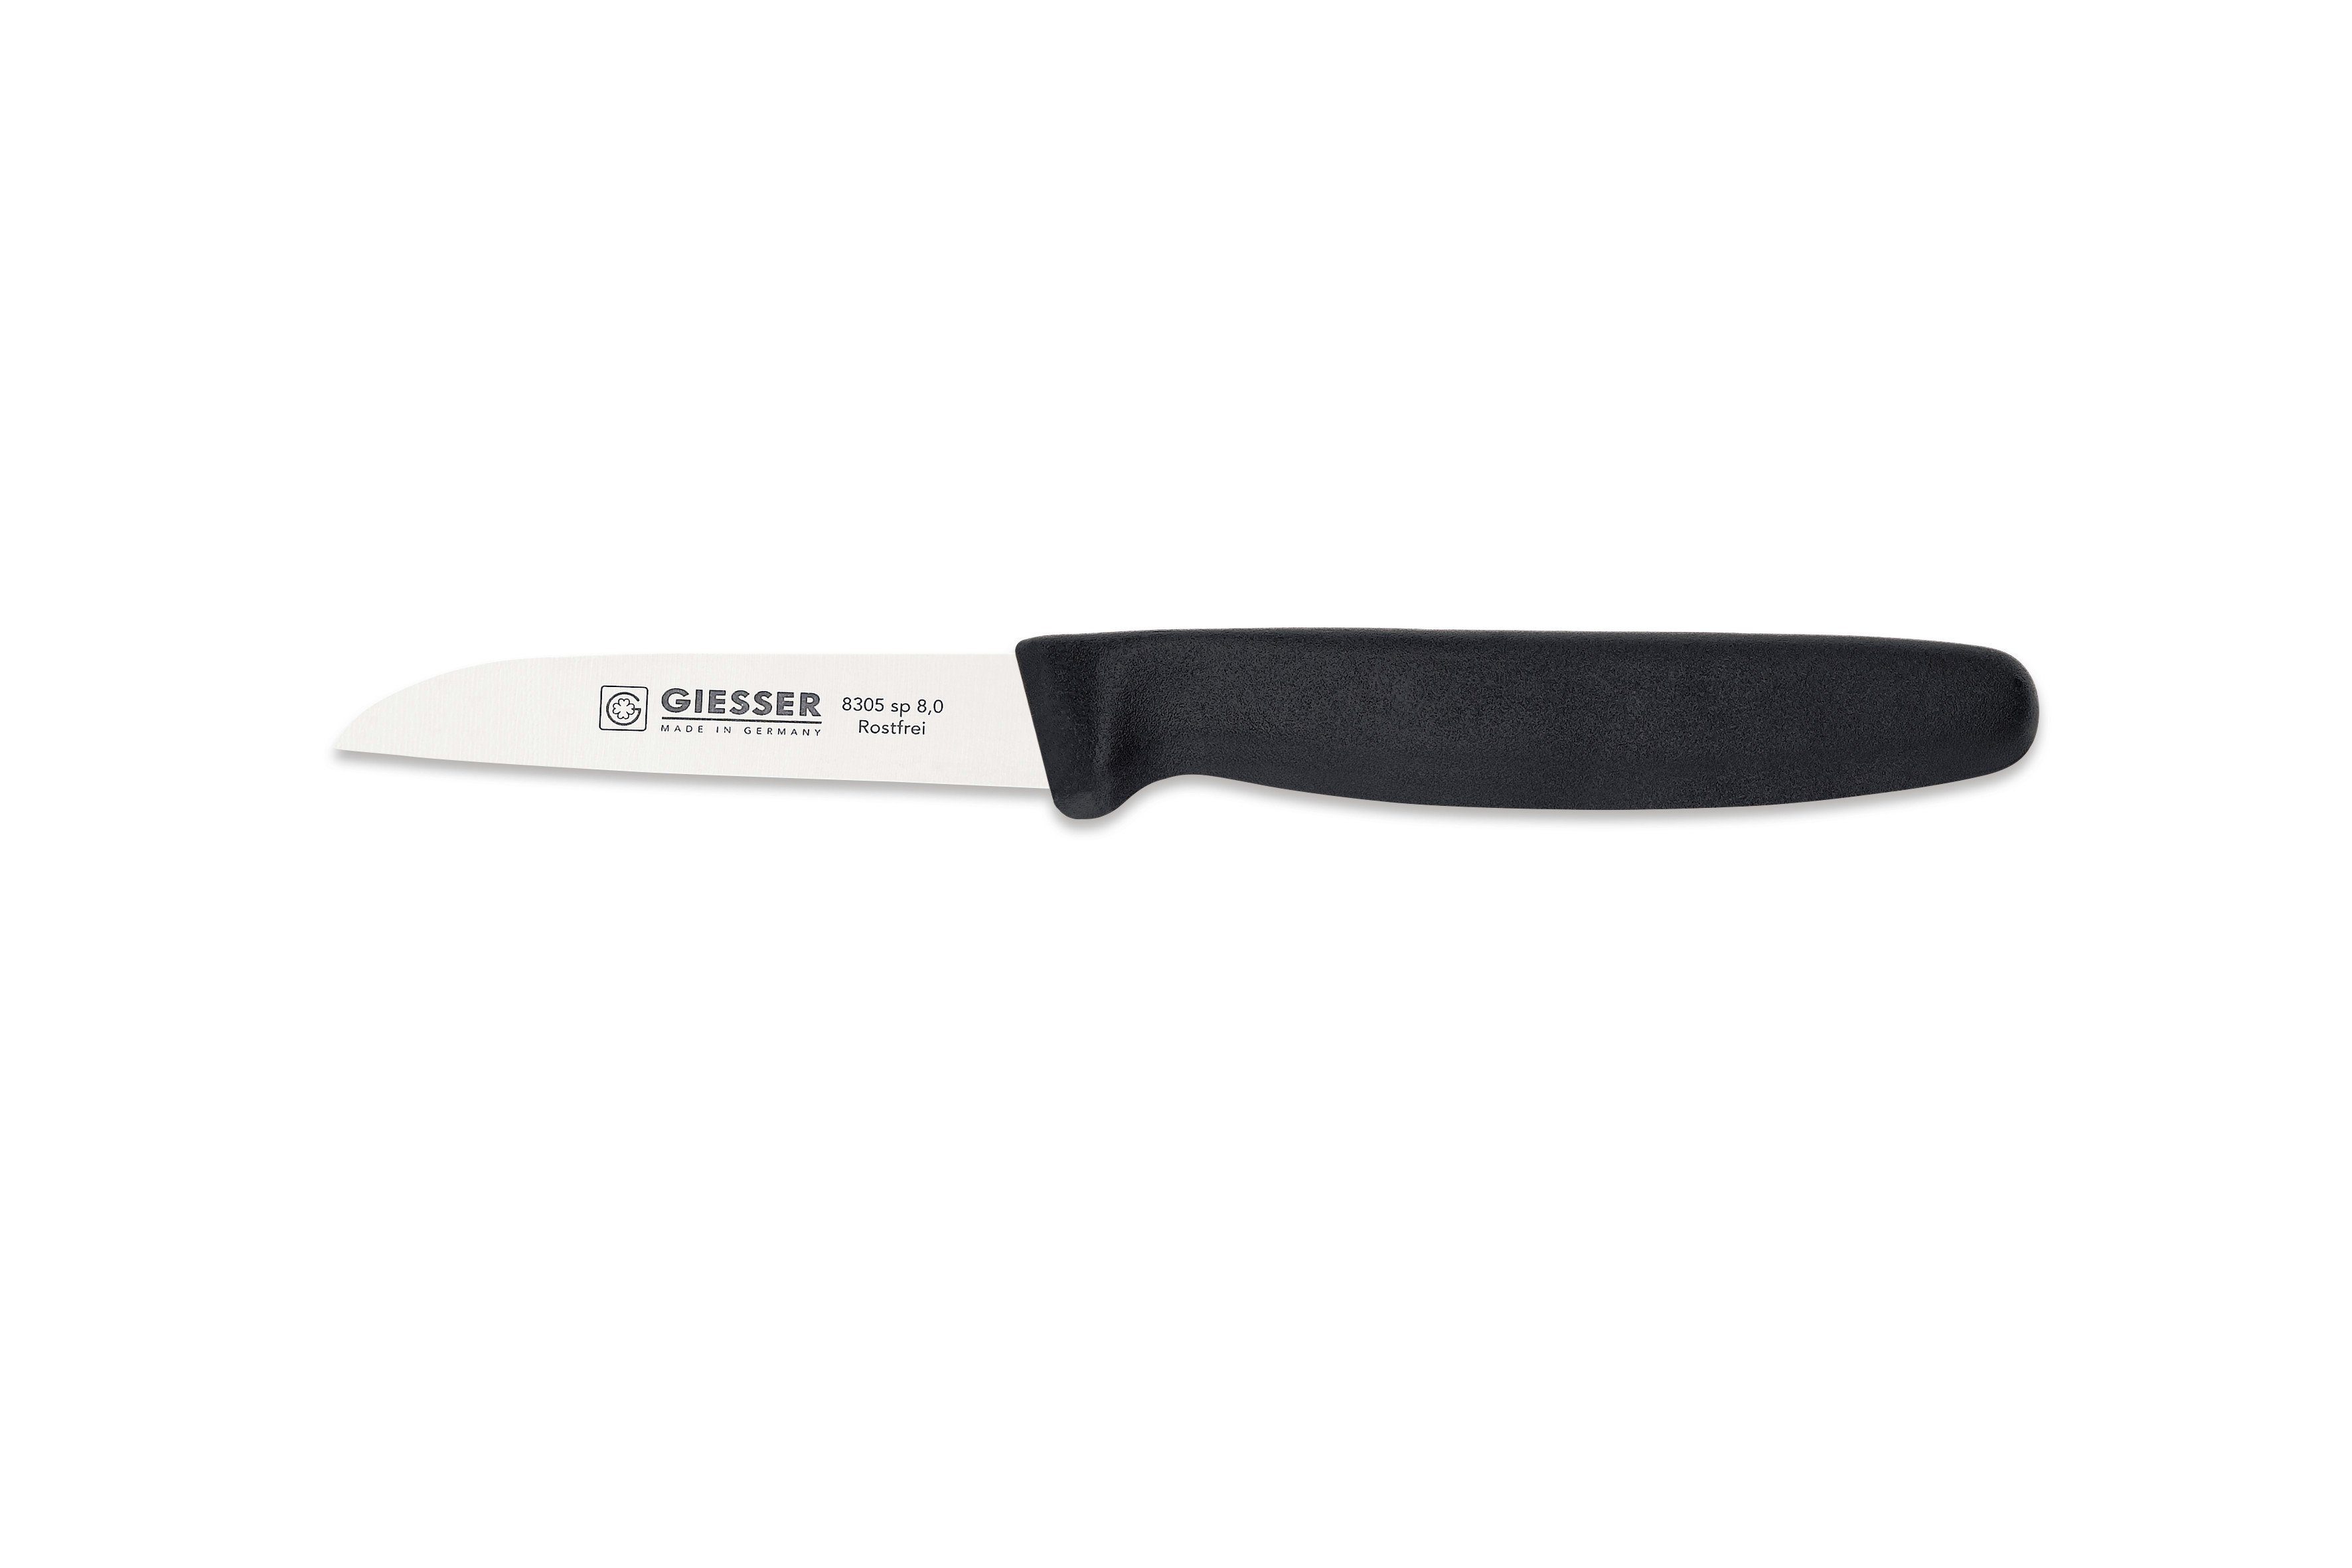 Giesser Messer Gemüsemesser Küchenmesser 8305 sp 8 alle Farben, Küchenmesser gerade Schneide 8 cm, Made in Germany Schwarz